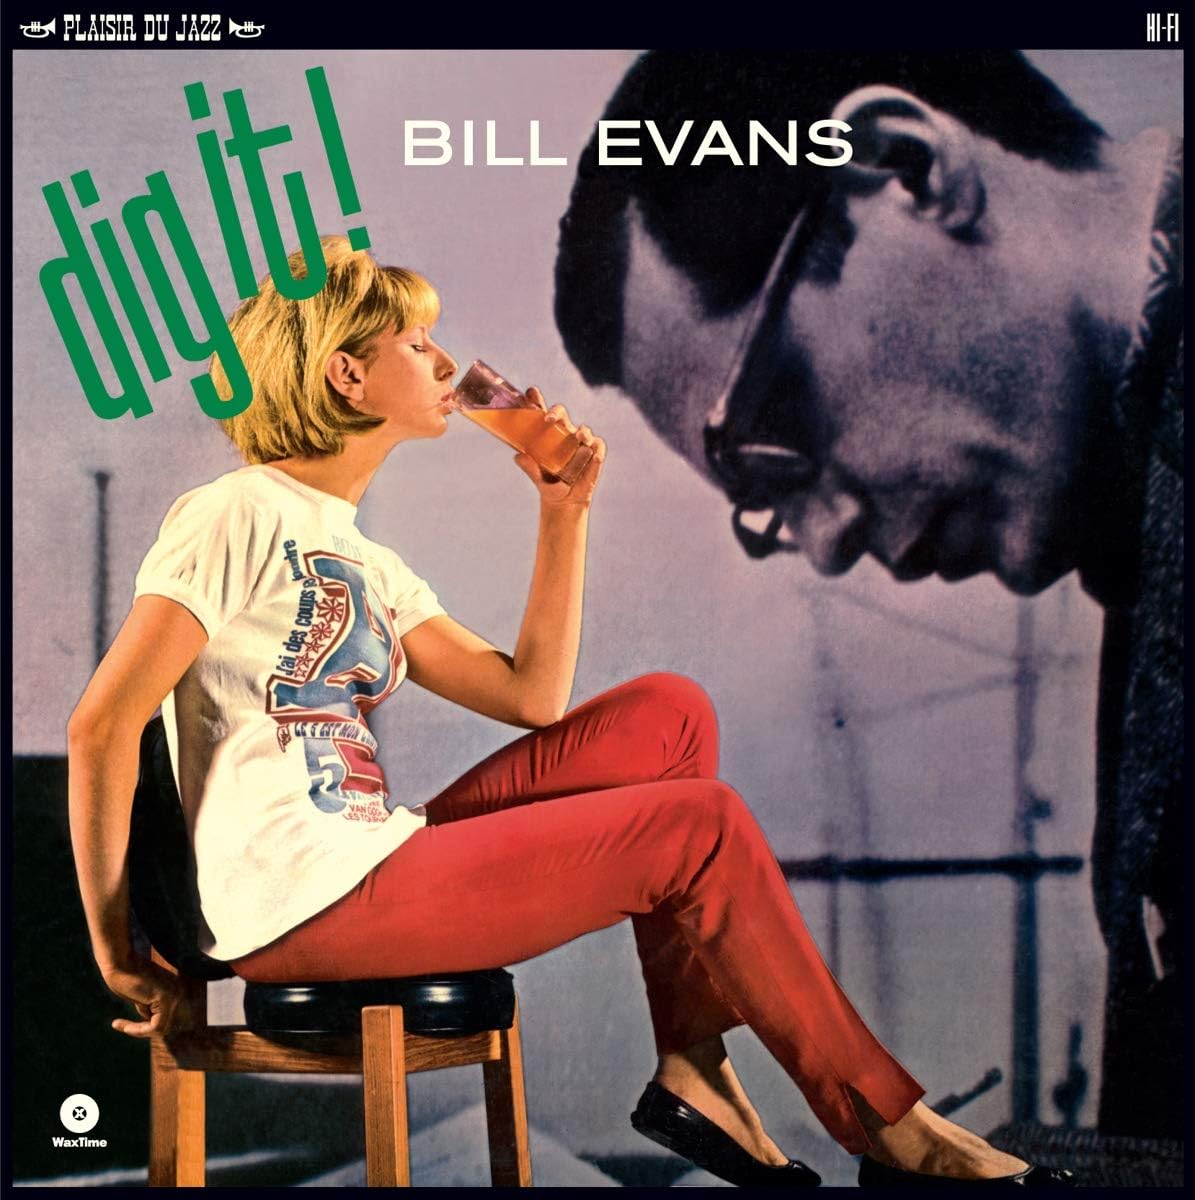 Bill Evans - Dig it! (Vinile 180gr.)